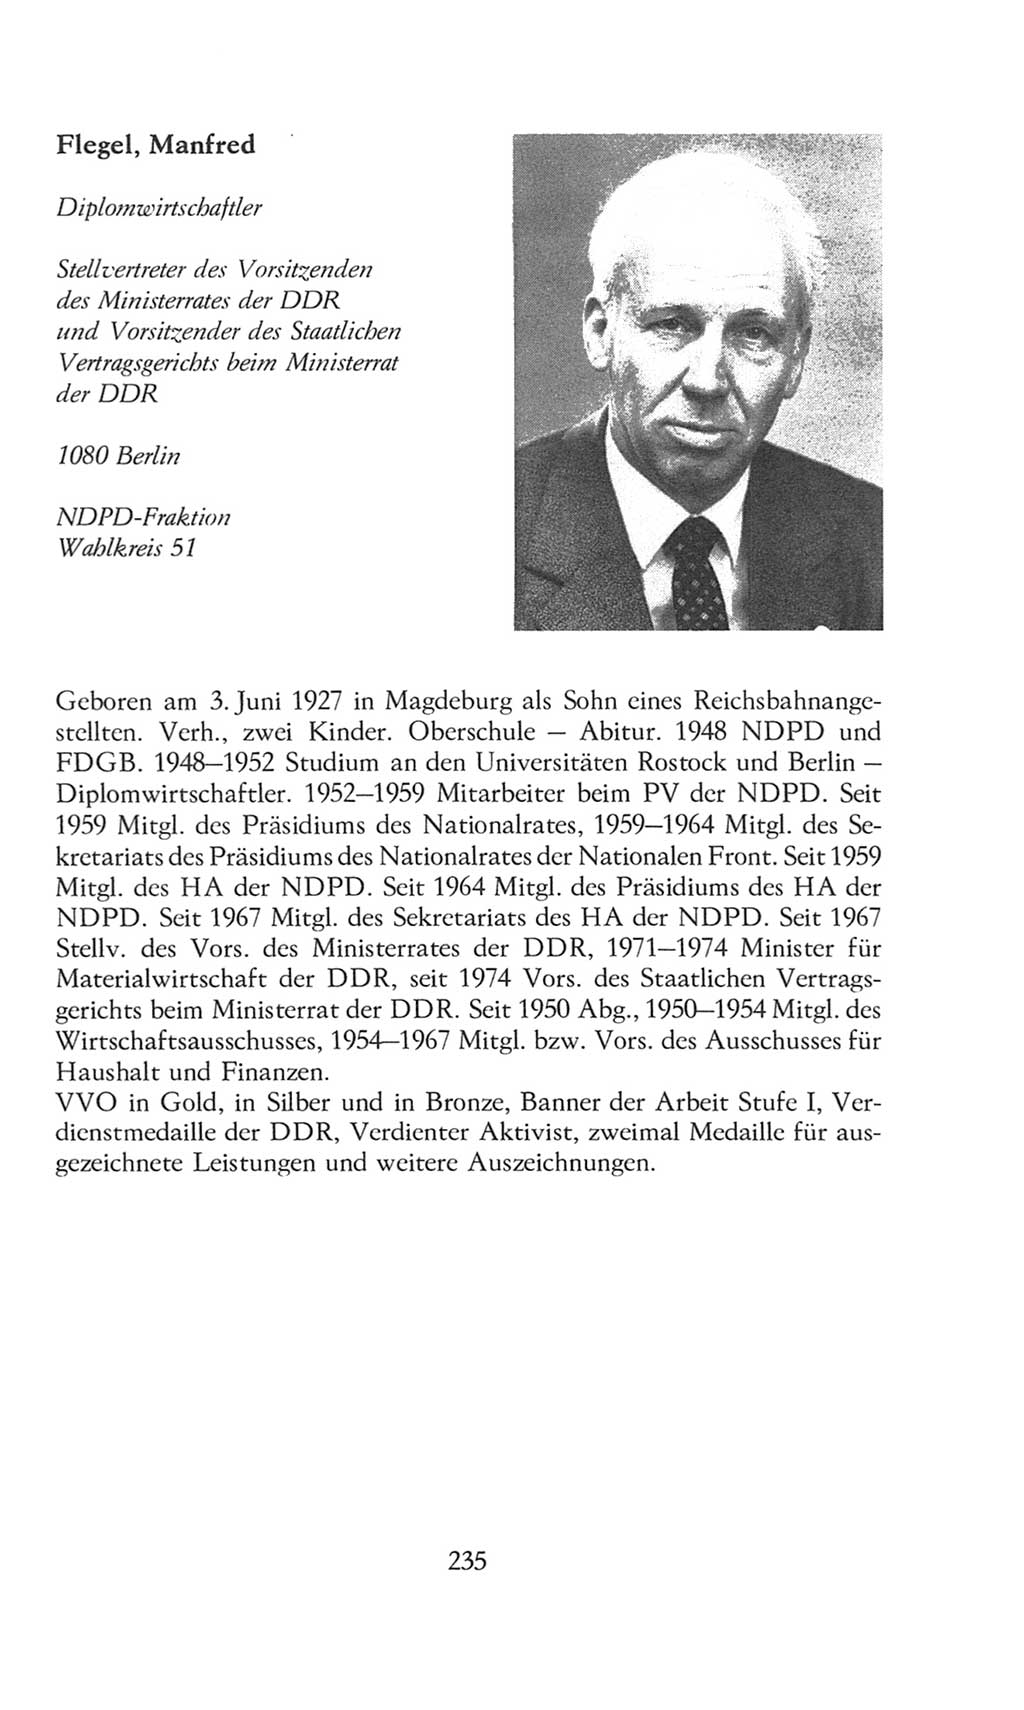 Volkskammer (VK) der Deutschen Demokratischen Republik (DDR), 8. Wahlperiode 1981-1986, Seite 235 (VK. DDR 8. WP. 1981-1986, S. 235)